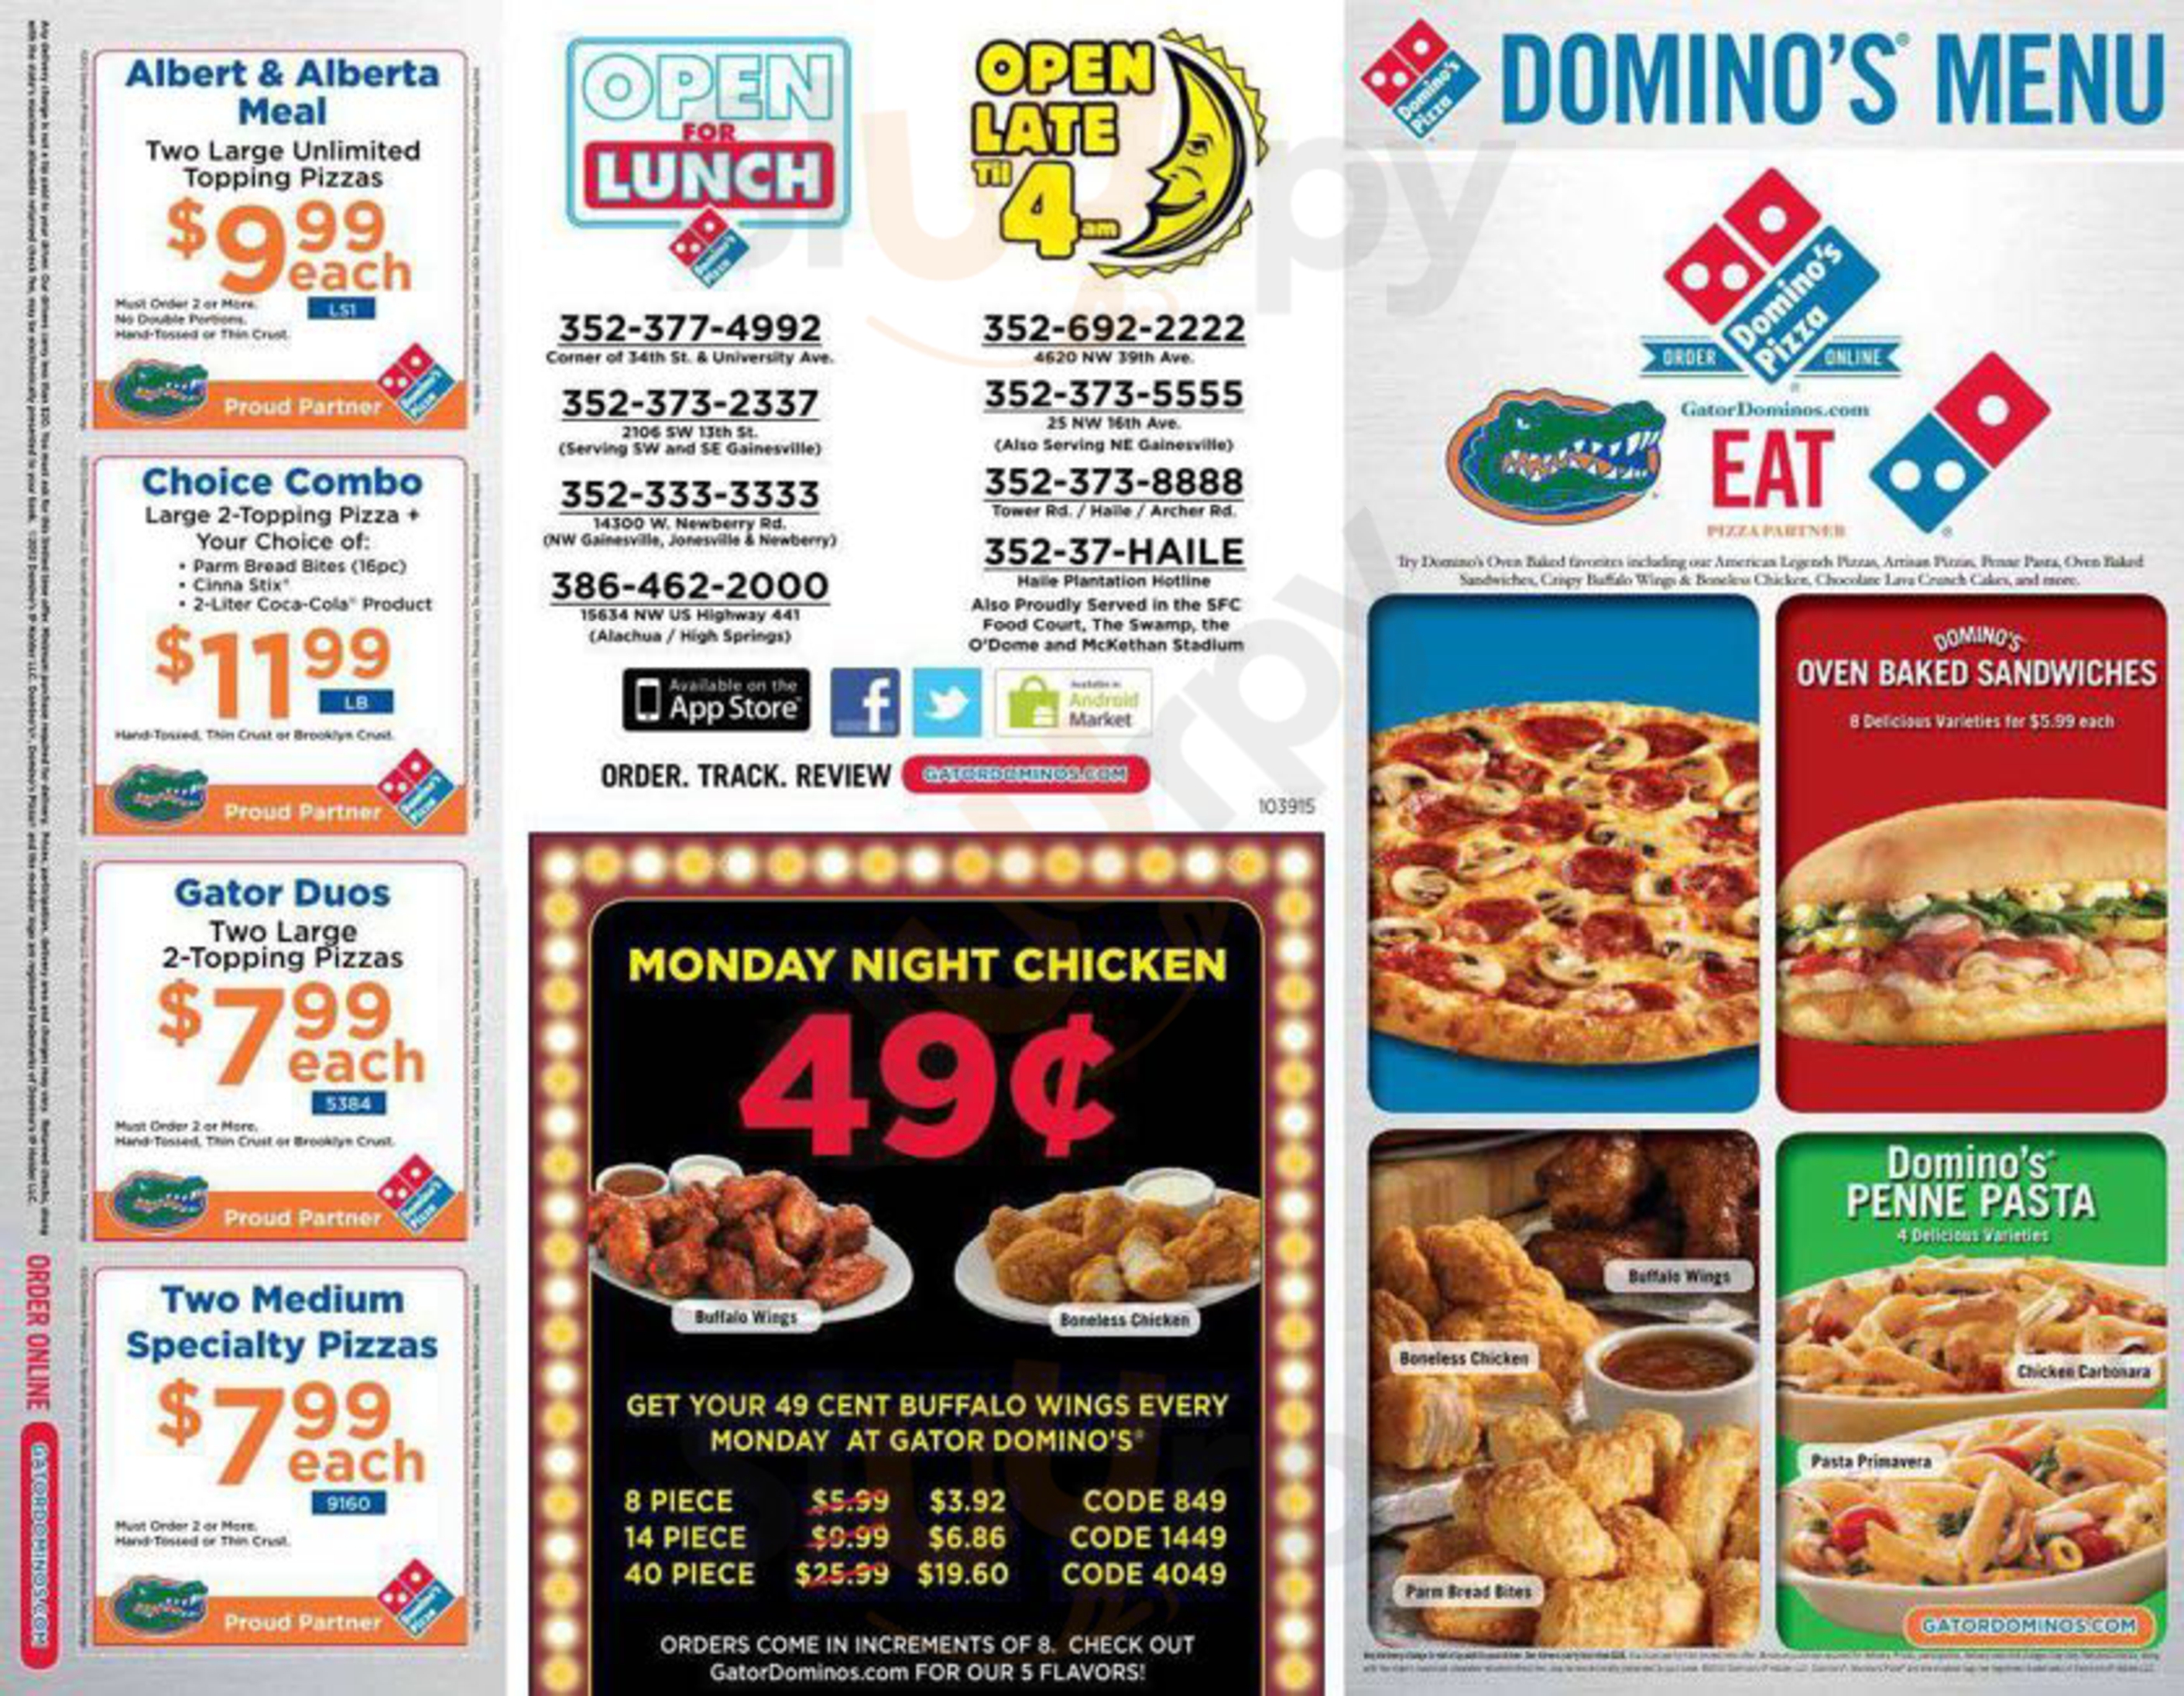 Domino's Pizza Atlanta Menu - 1